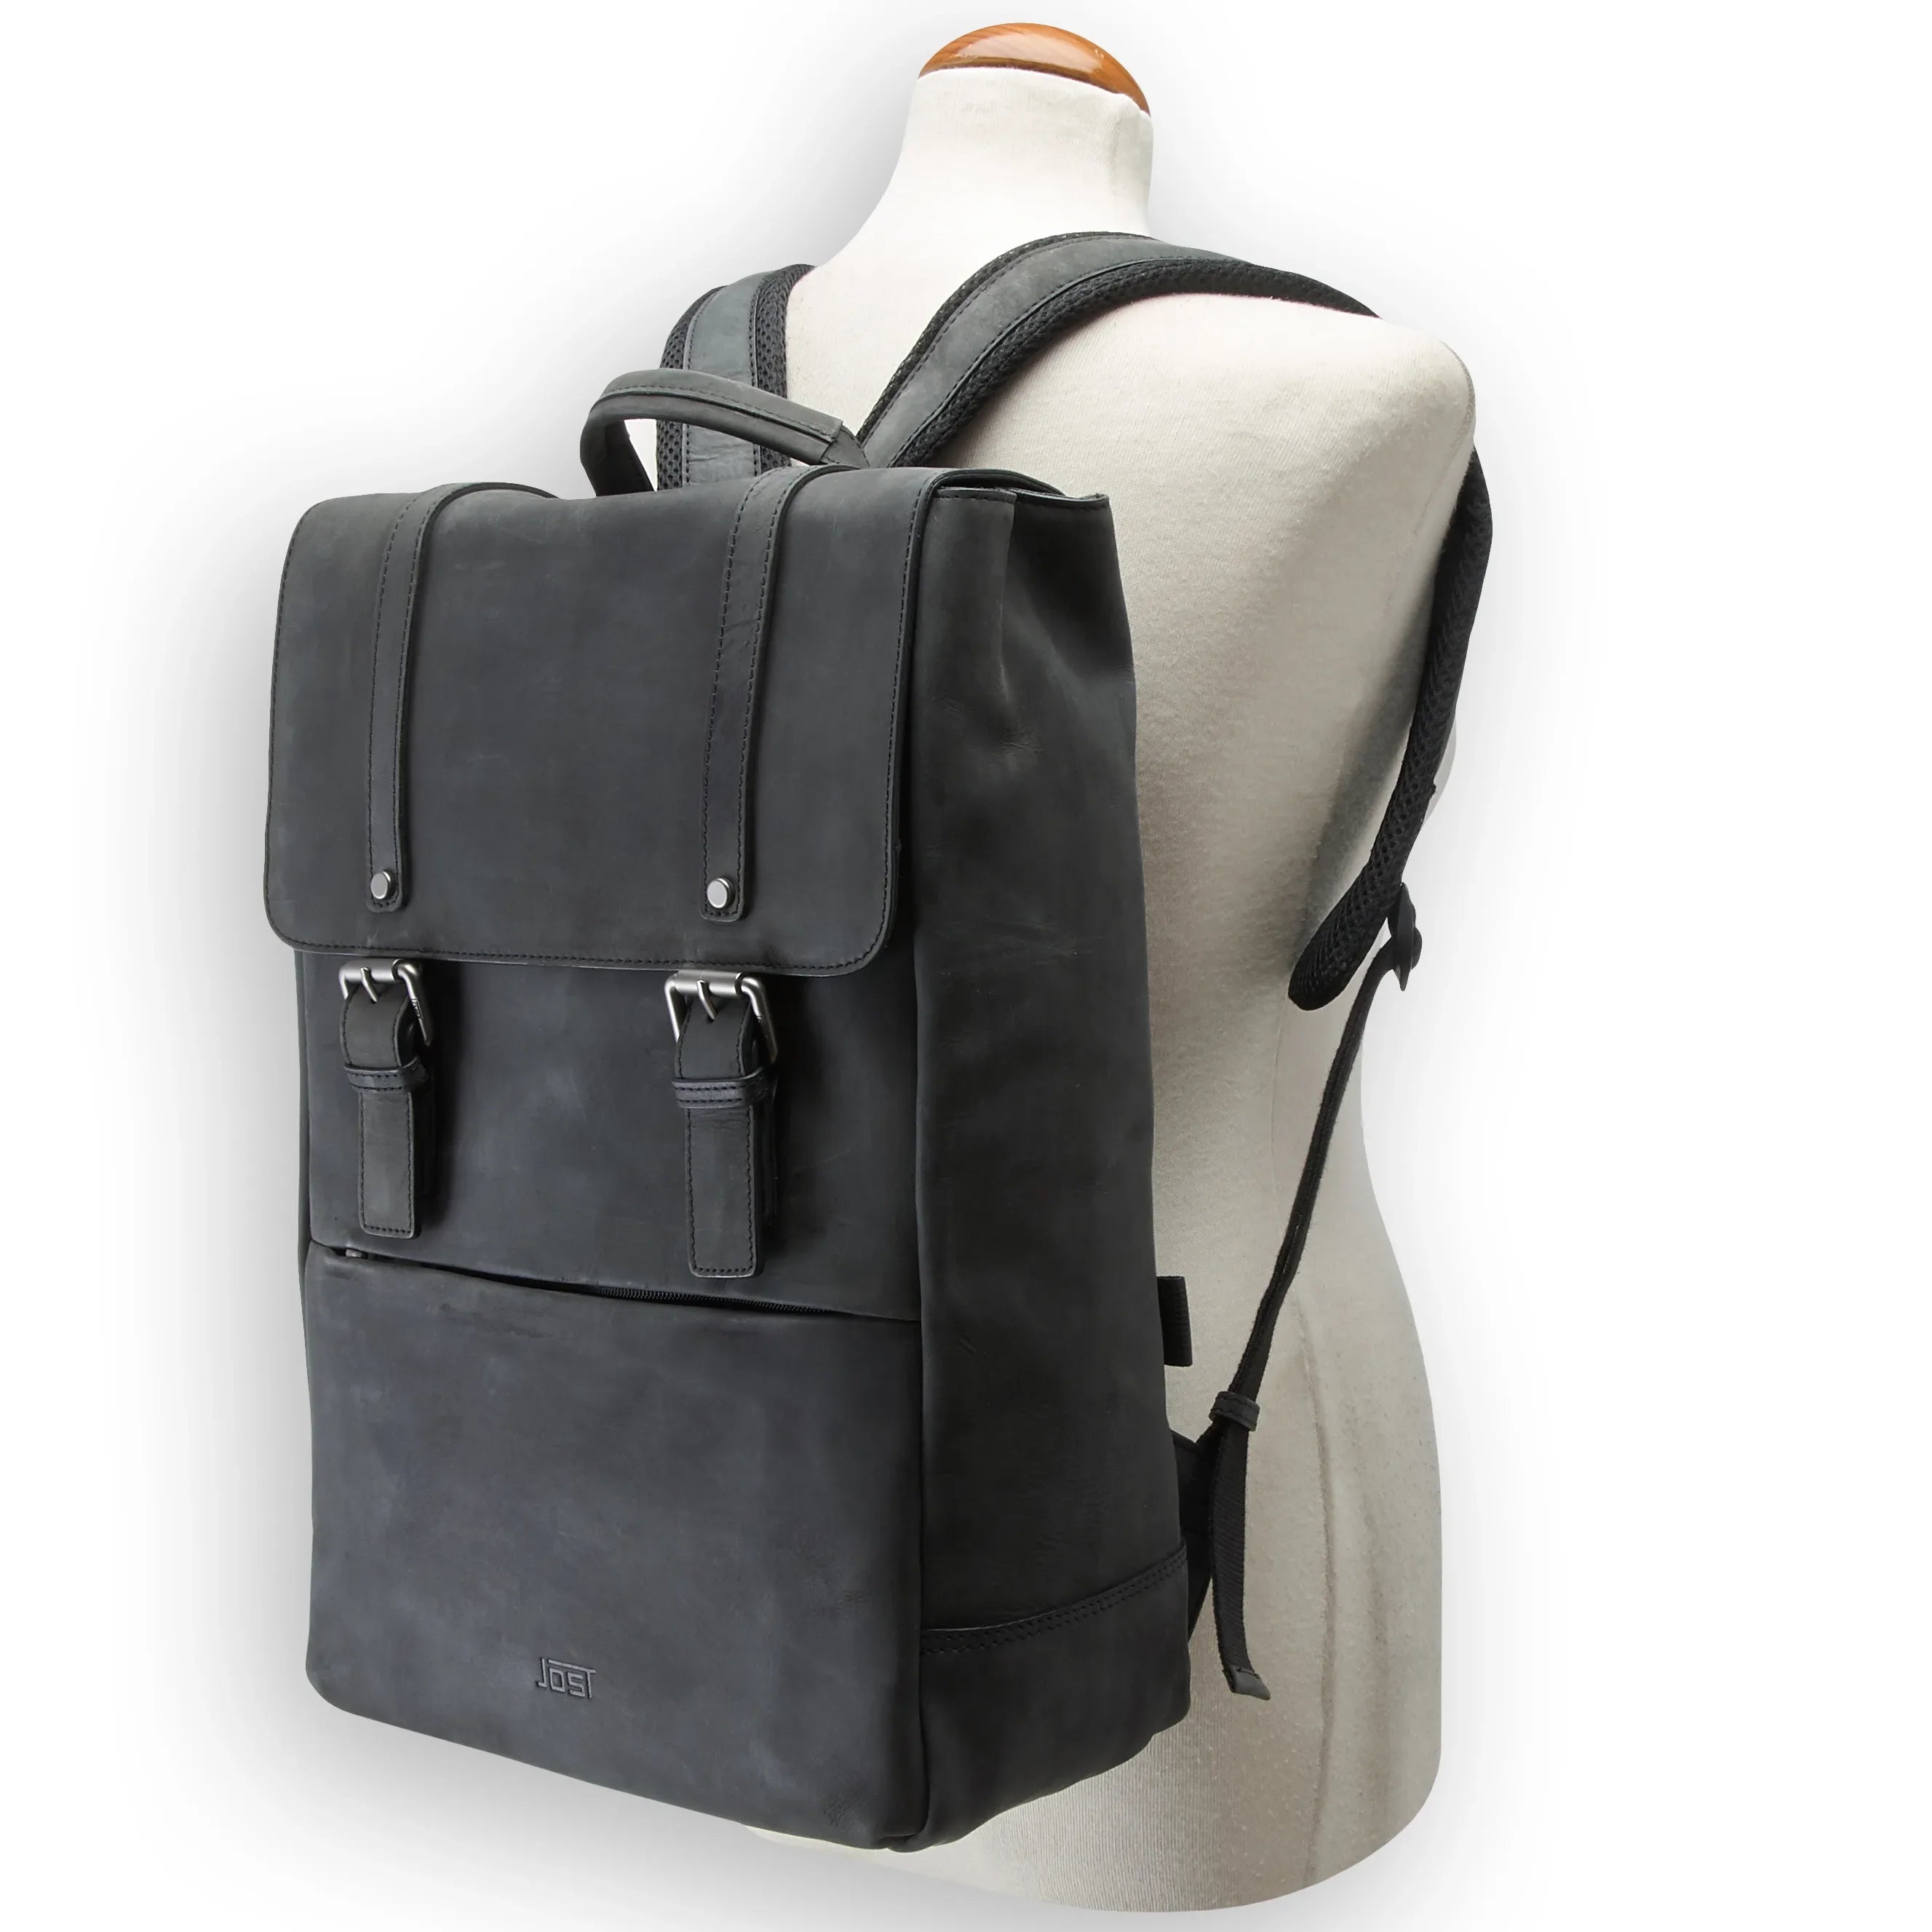 Jost Salo backpack 45 cm - black